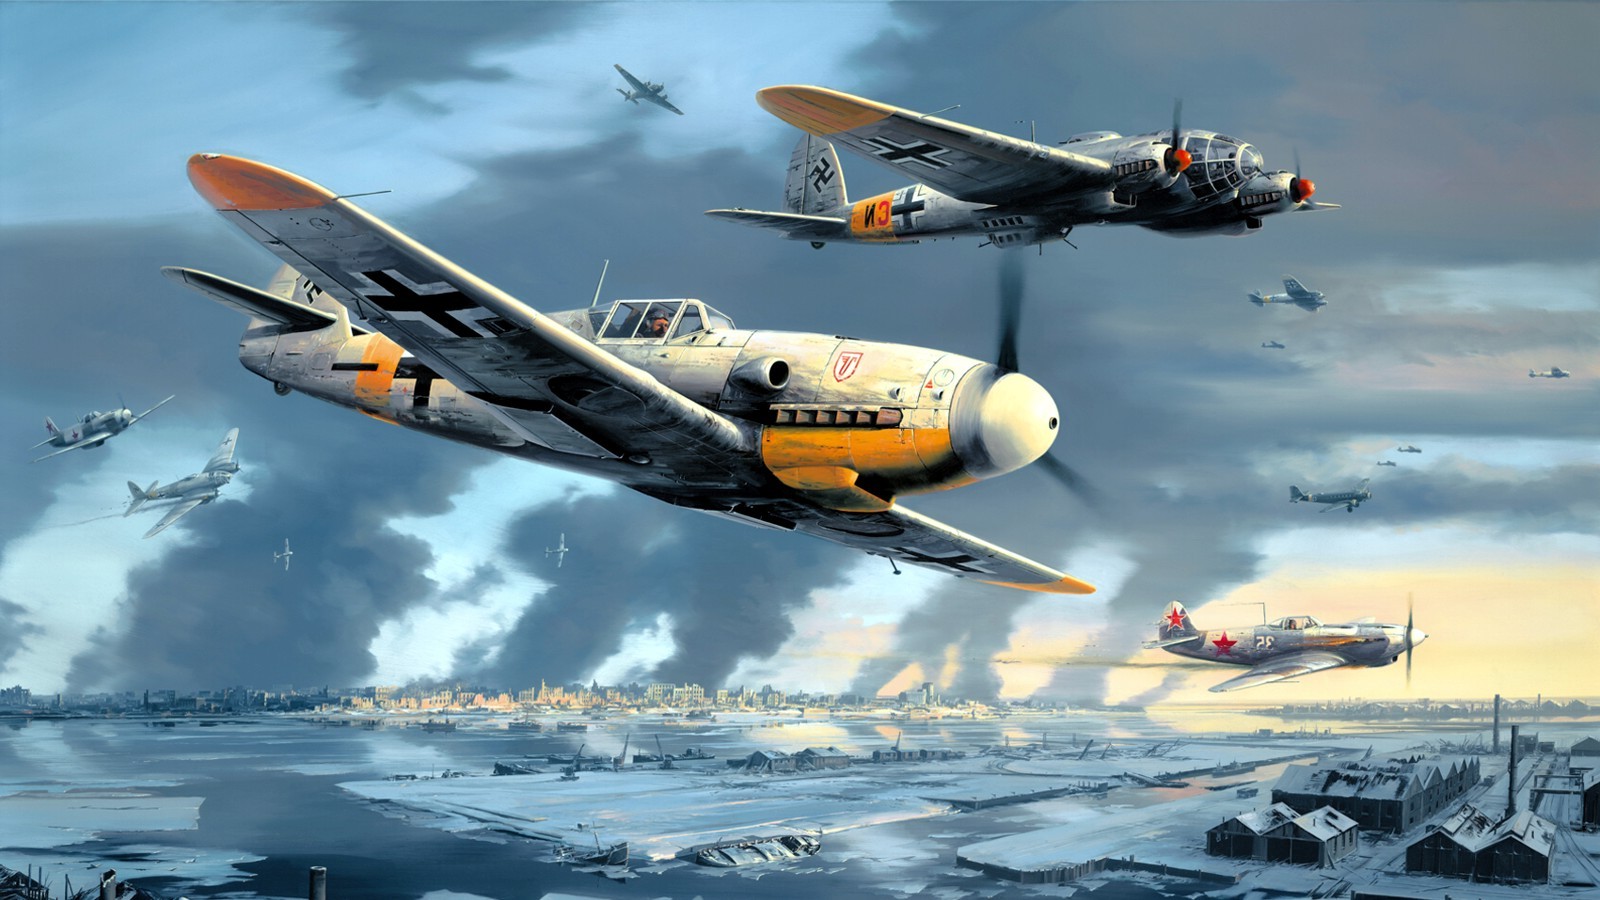 Messerschmitt, Messerschmitt Bf 109, Luftwaffe, Aircraft, Military, Artwork, Military Aircraft, World War II, Germany, He 111, Heinkel He 111 Wallpaper